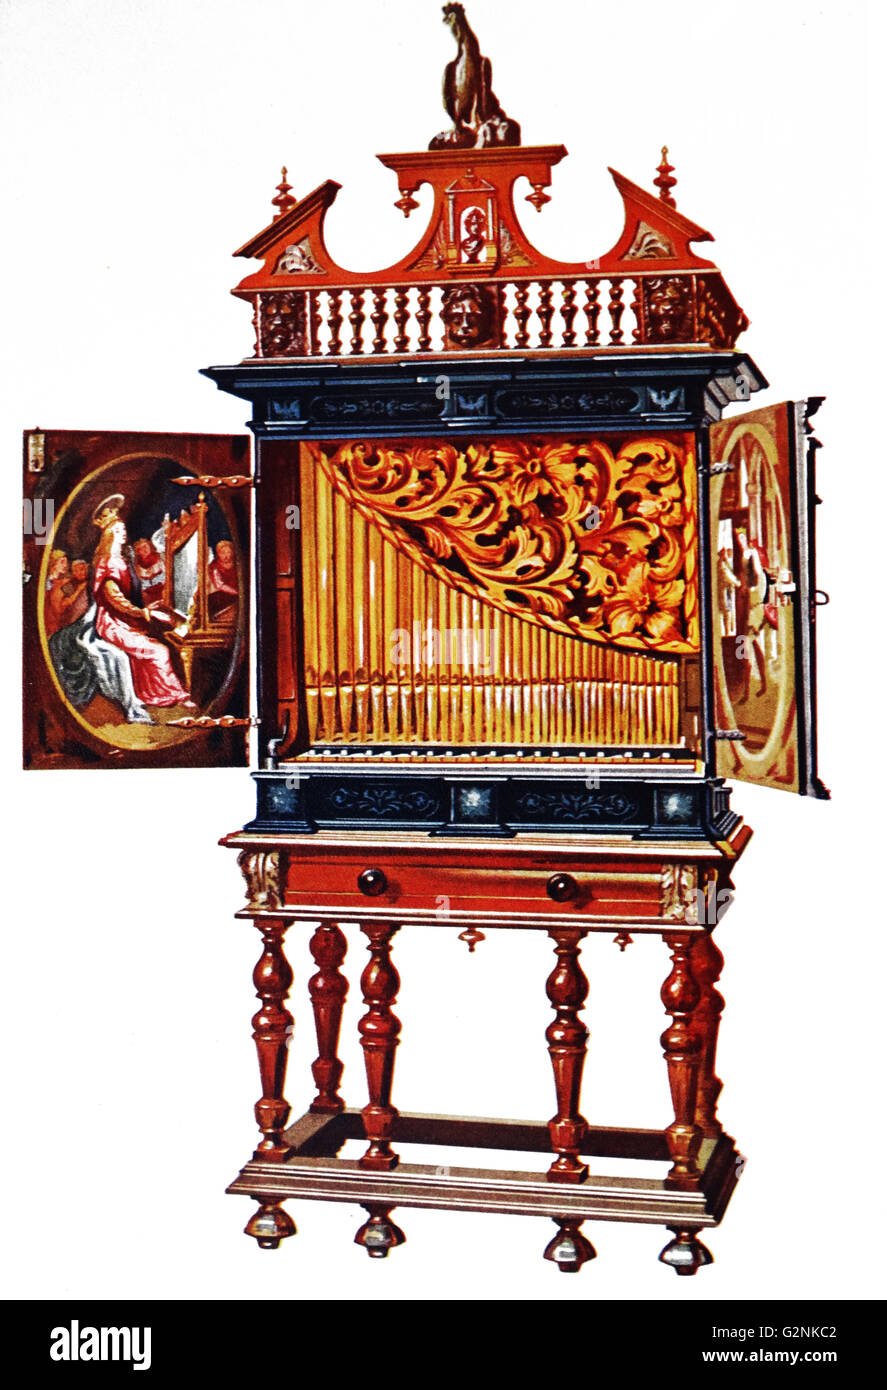 Positive Orgel. Dieses Musikinstrument ist eine Kammer Orgel und wird gedacht zu haben, gehörte der Epoche von Louis XIII. Stockfoto